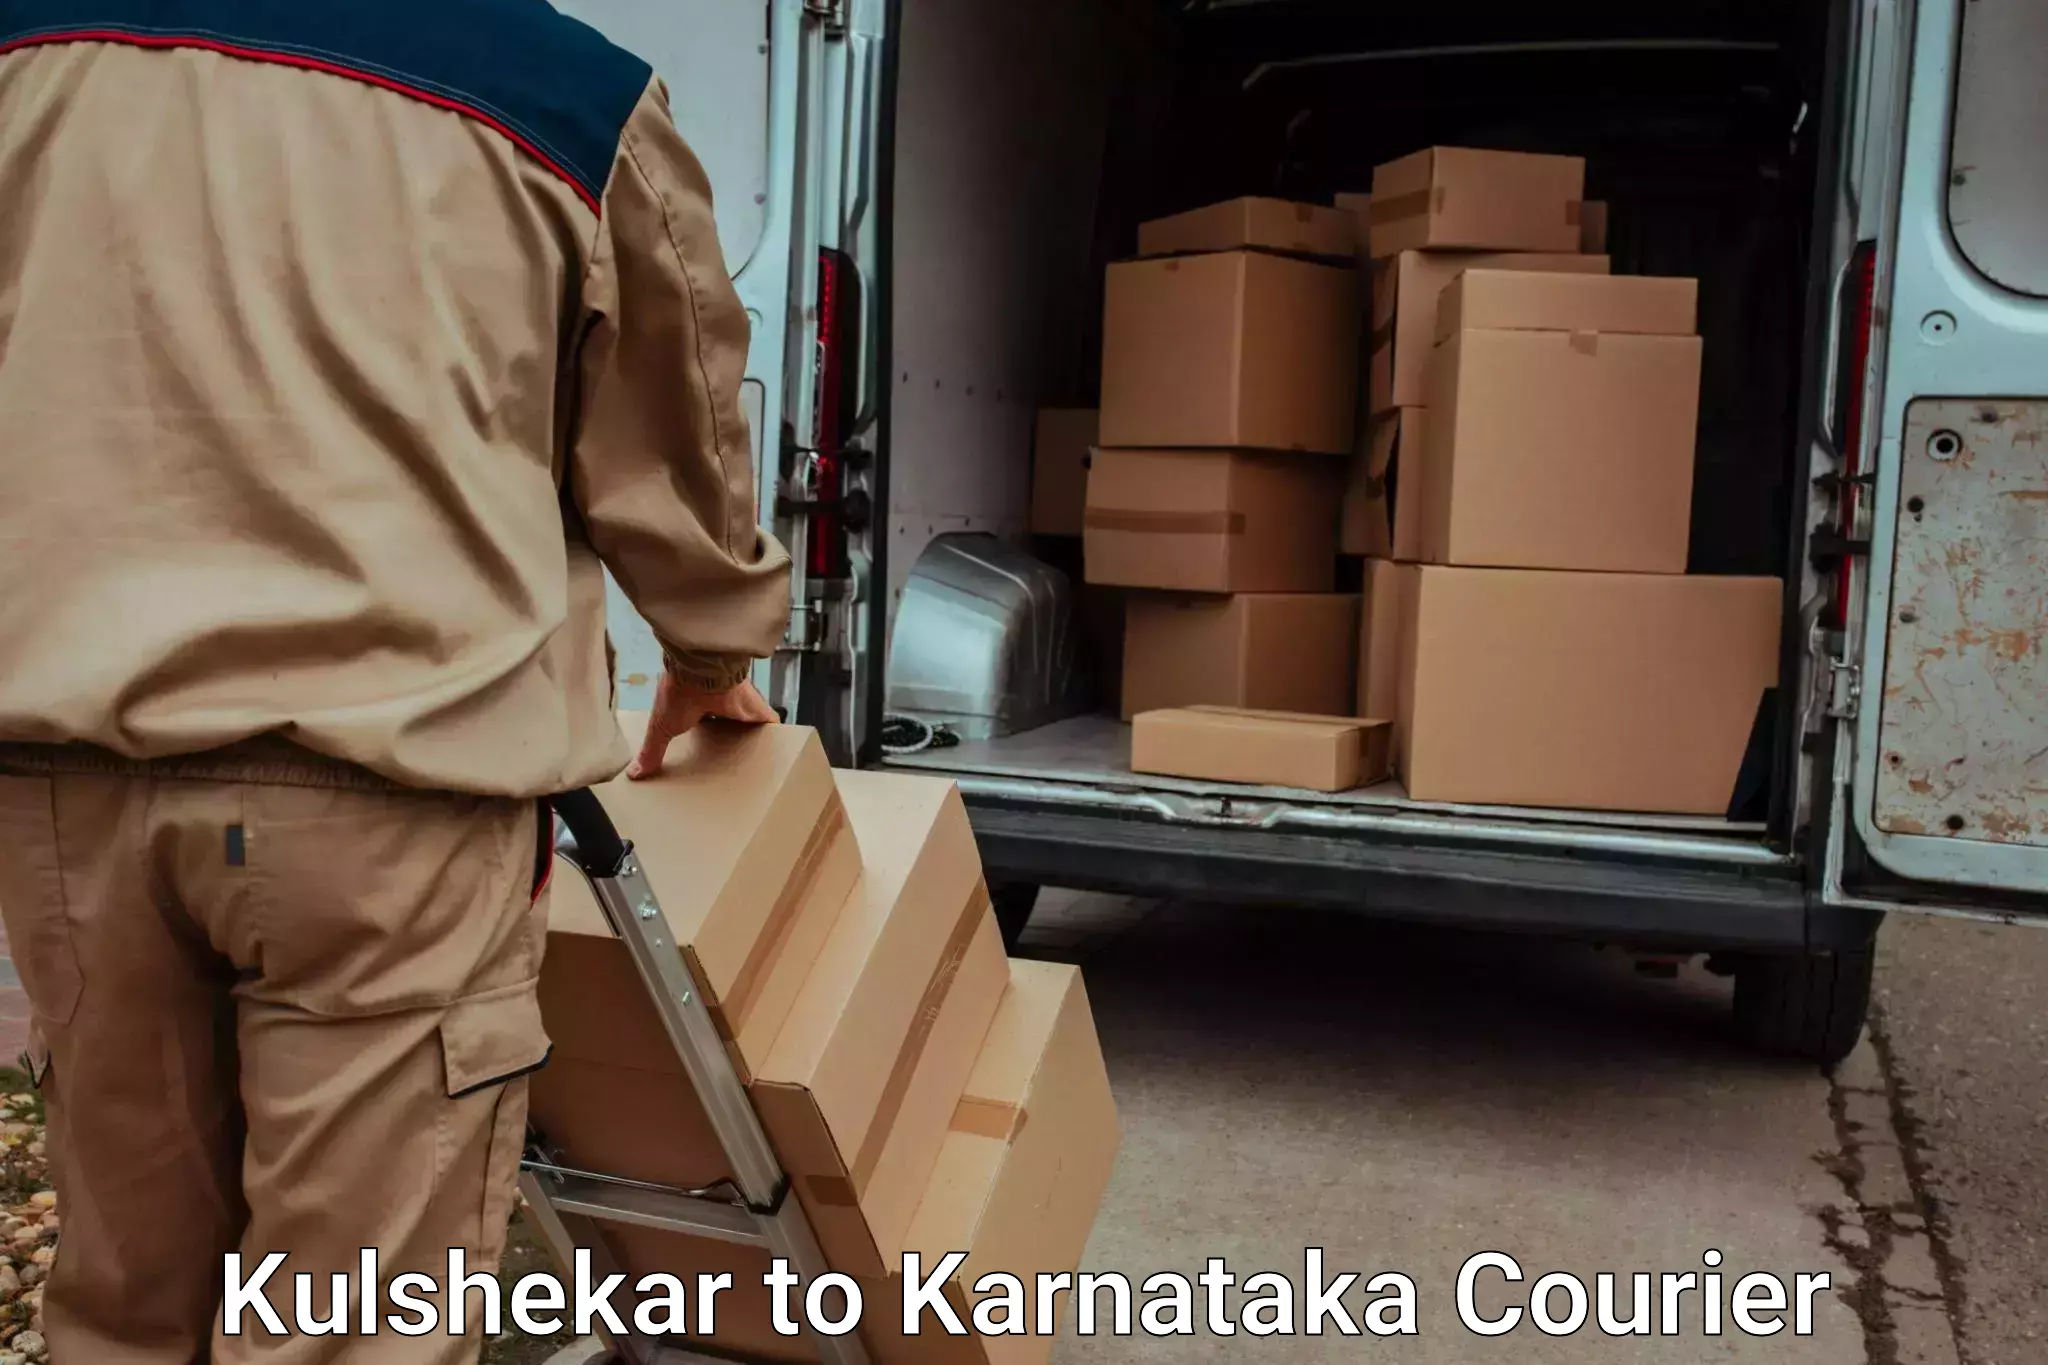 Door-to-door baggage service in Kulshekar to Kalaburagi